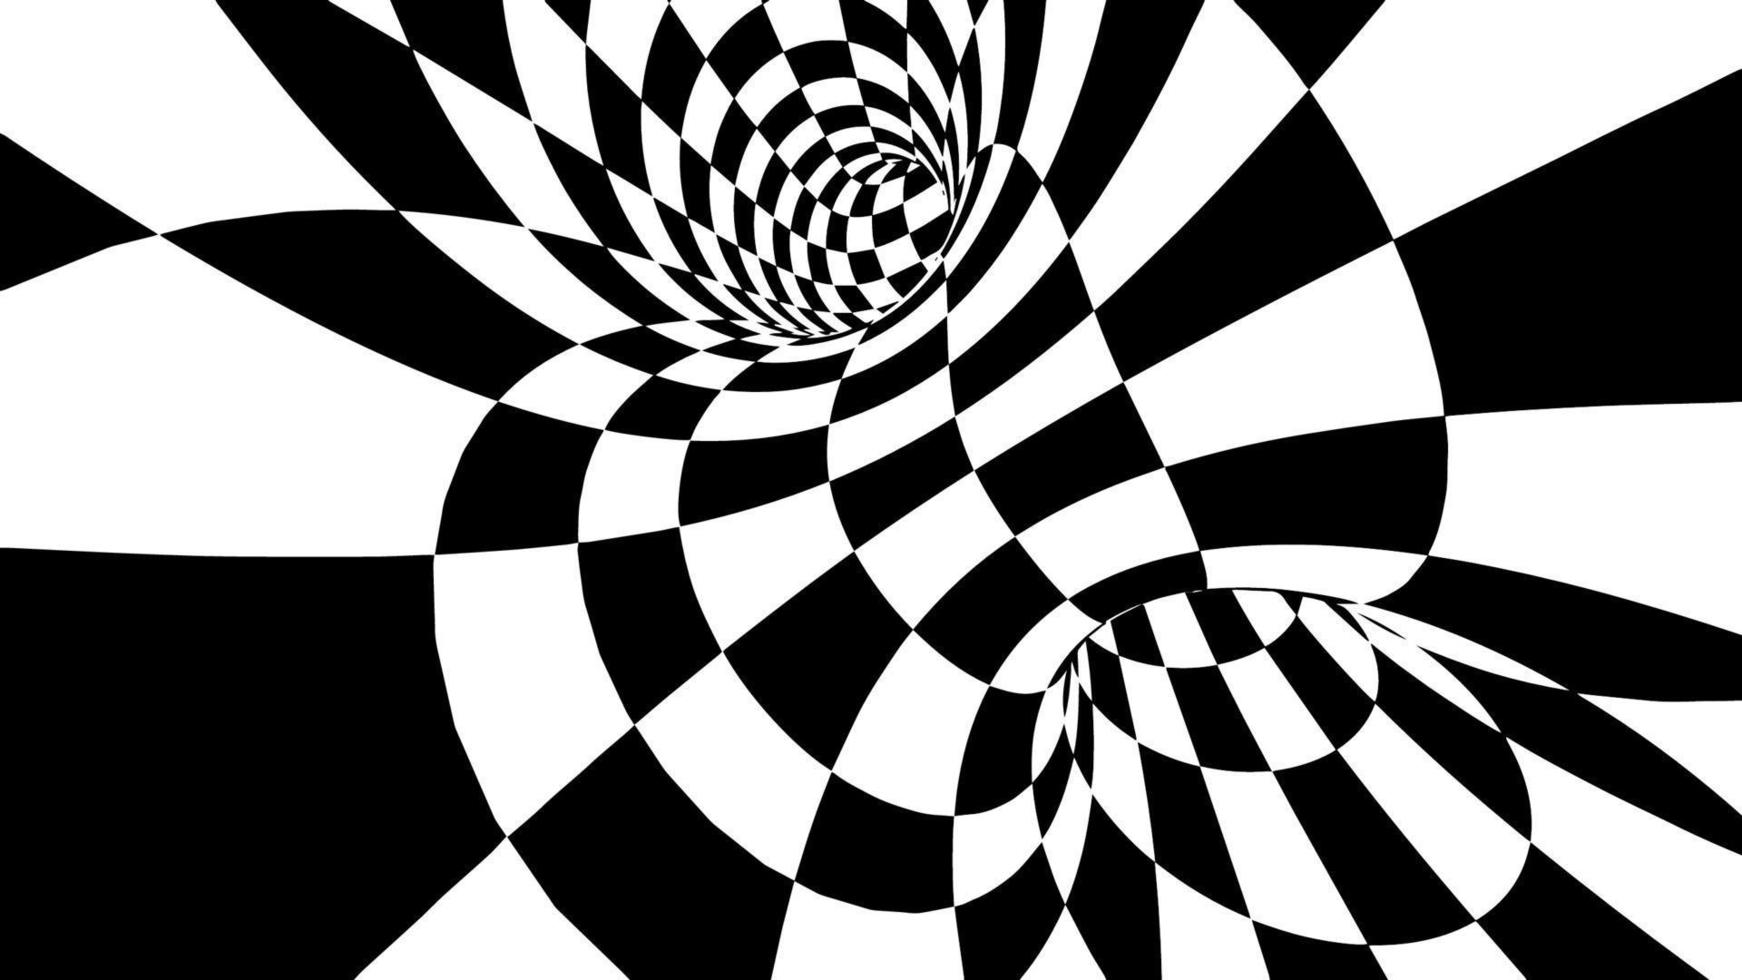 ilustração em vetor toro xadrez eps 10. vetor de ilusão de ótica. fundo do campeonato de corrida.